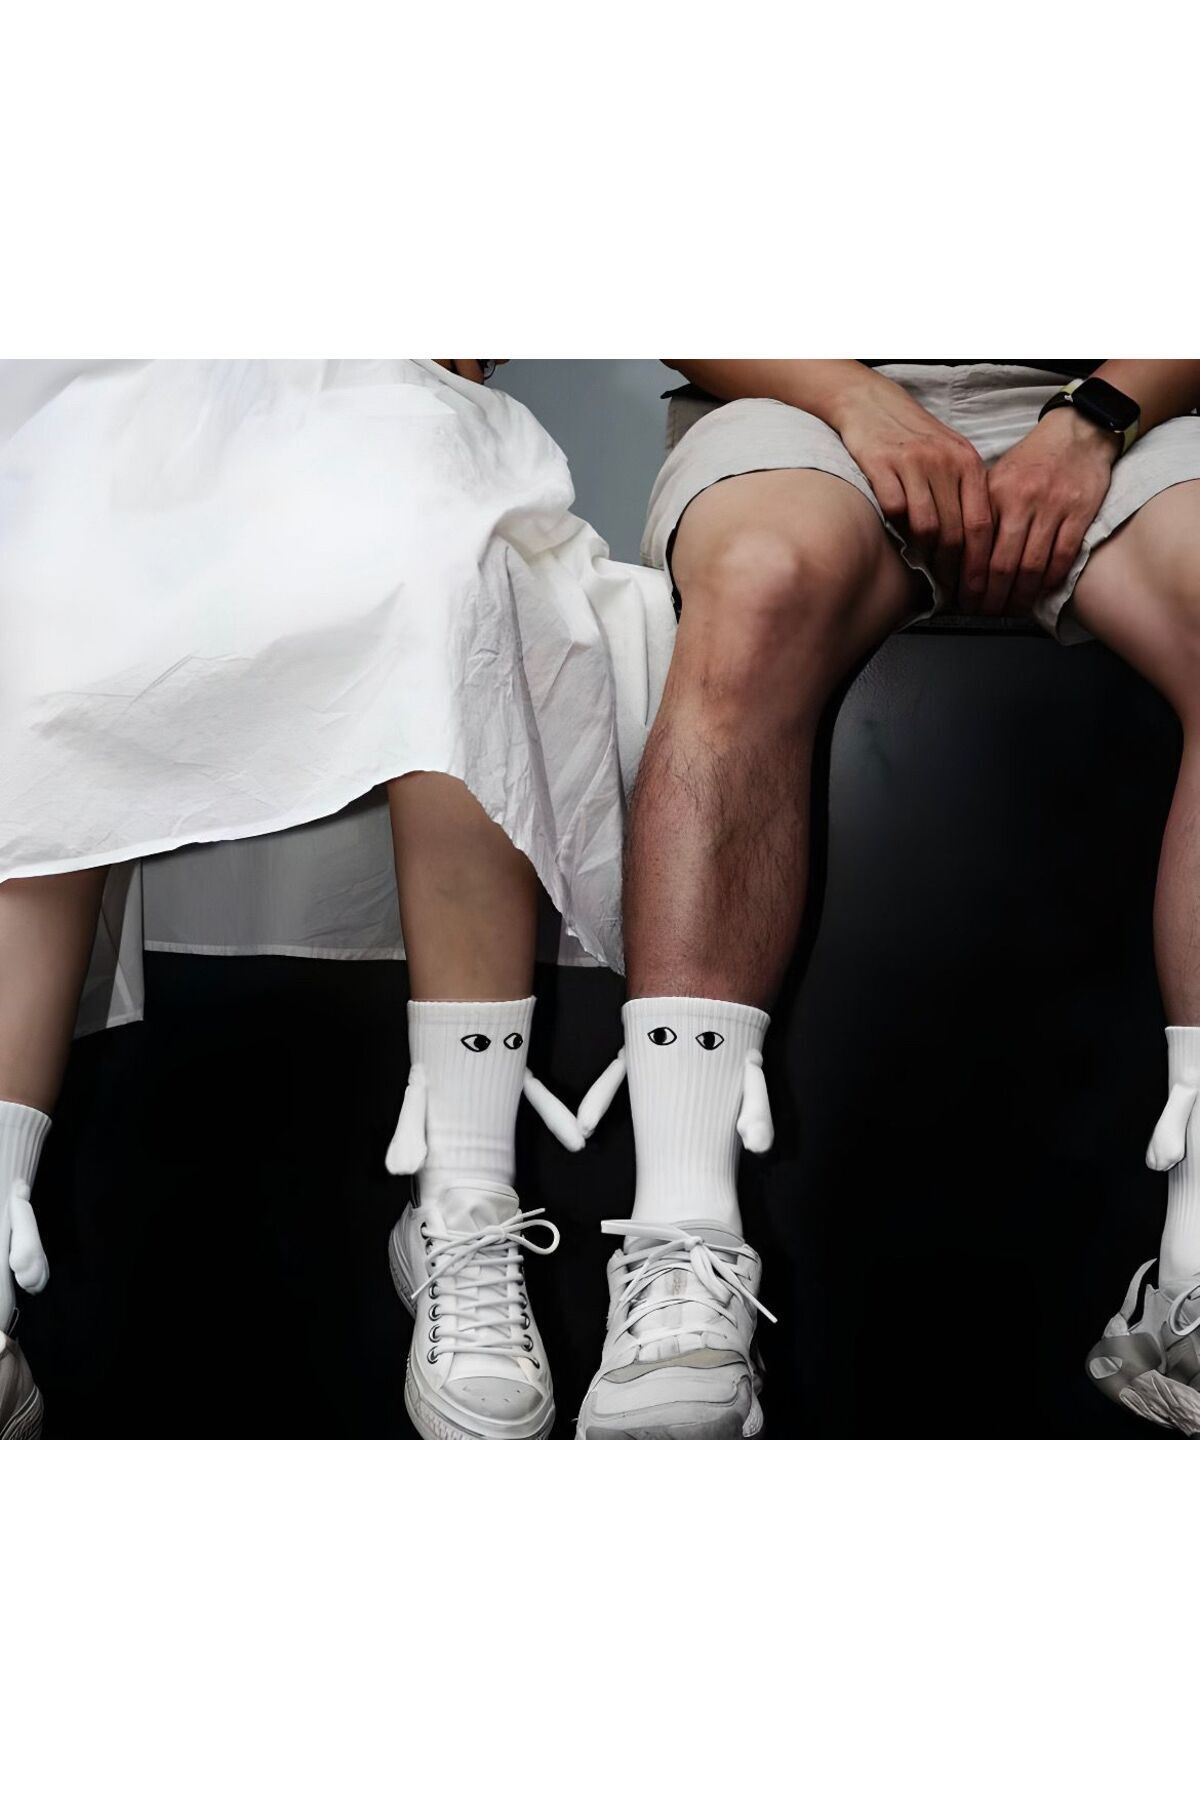 ASPANDA 2 Çift Beyaz Mıknatıslı El Ele Tutuşan Çorap Mıknatıslı Çorap Arkadaşlık Spor Çorabı Sevgili Çorabı